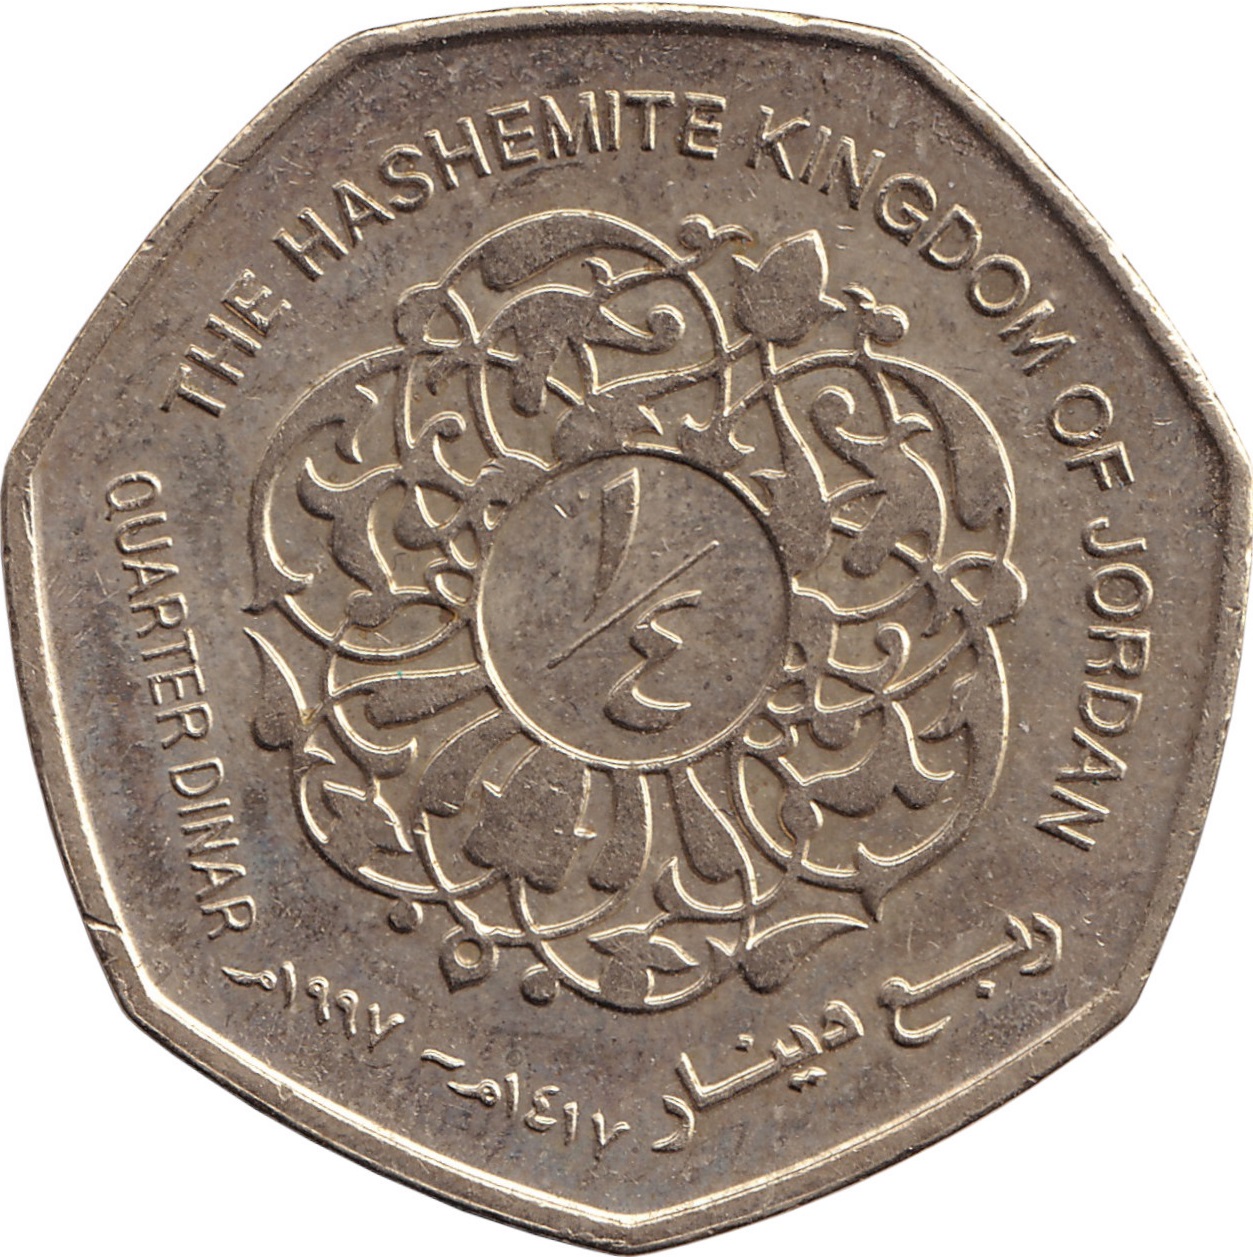 1/4 dinar - Hussein Ibn Talal - Old head